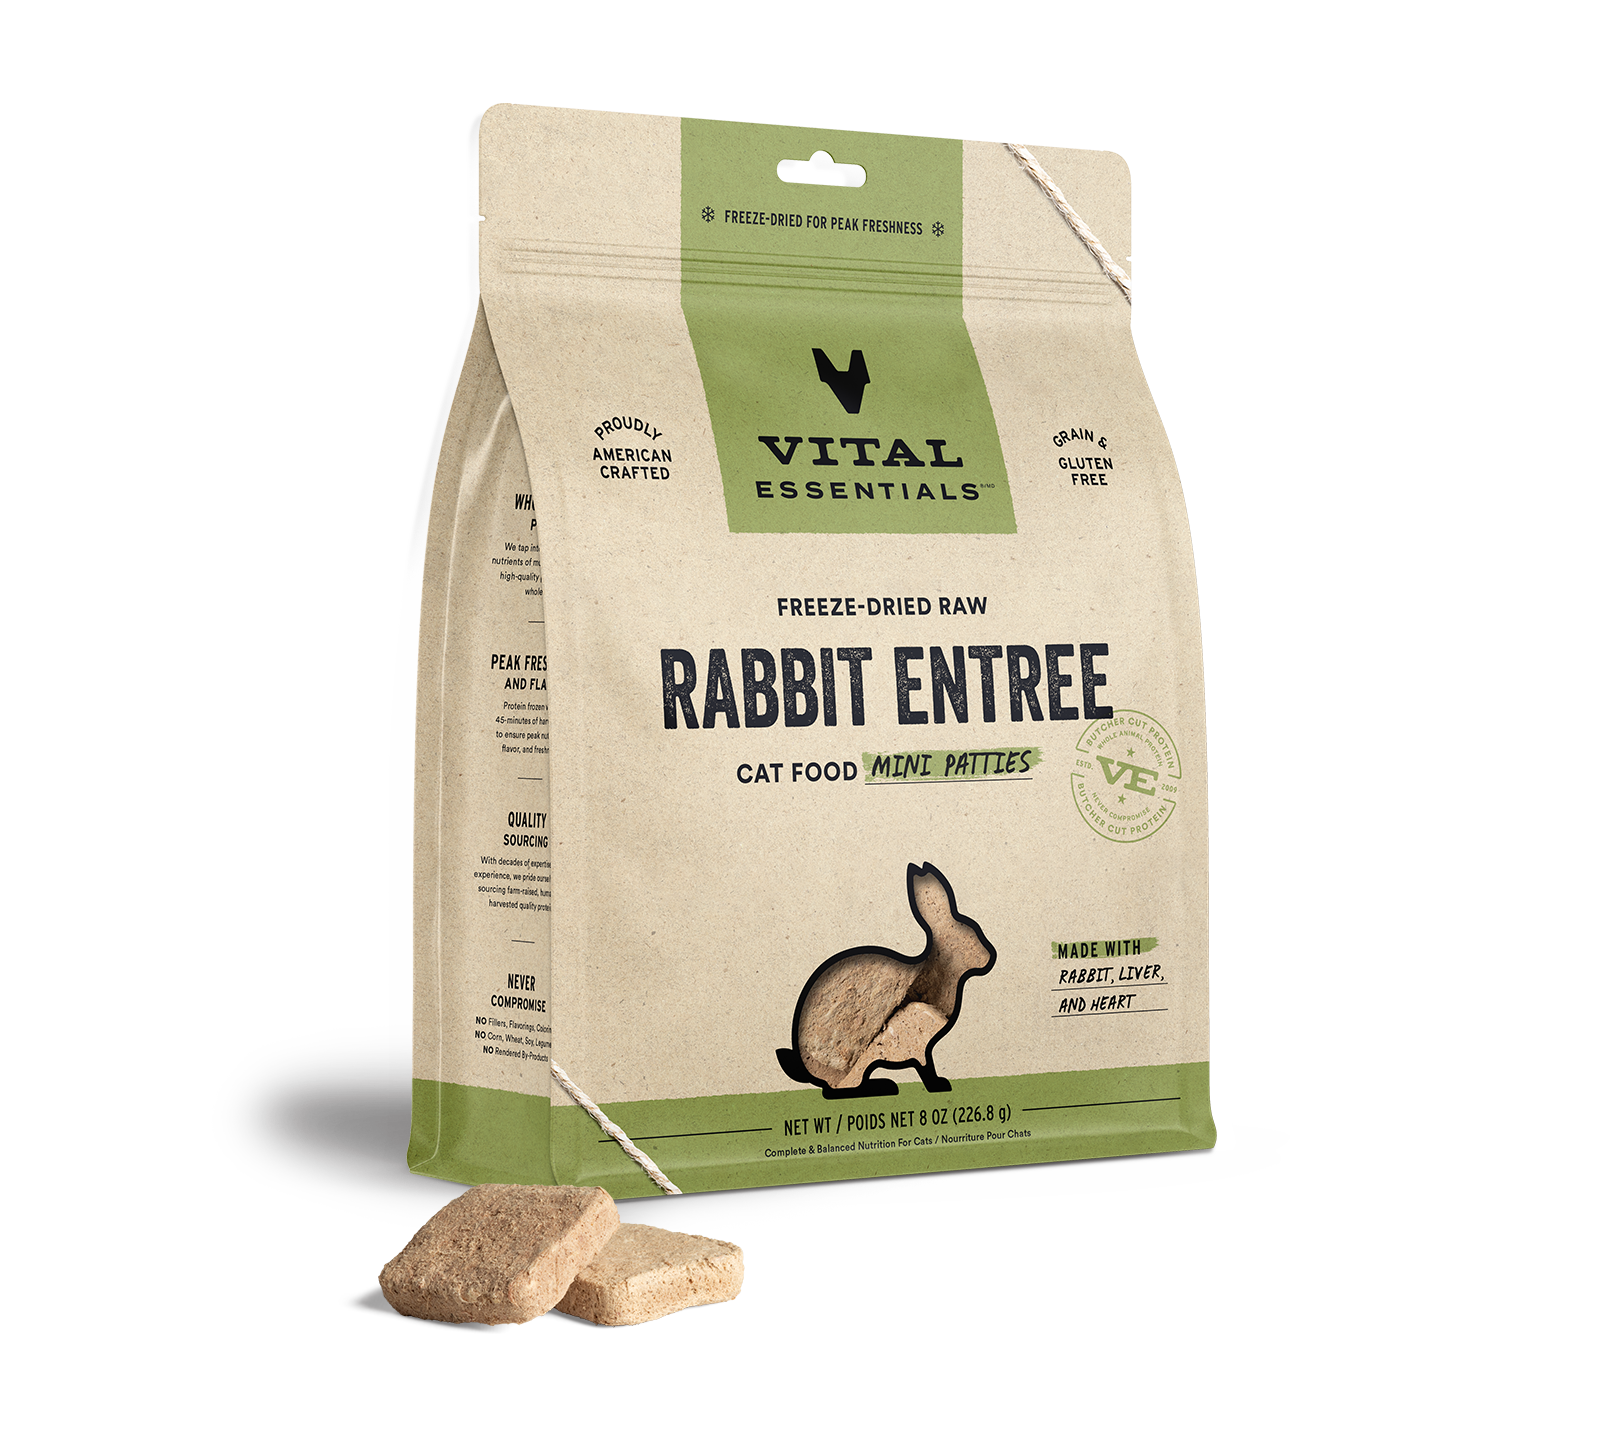 Vital Essentials Freeze-Dried Raw Rabbit Entree Cat Food Mini Patties, 8 oz - Healing/First Aid